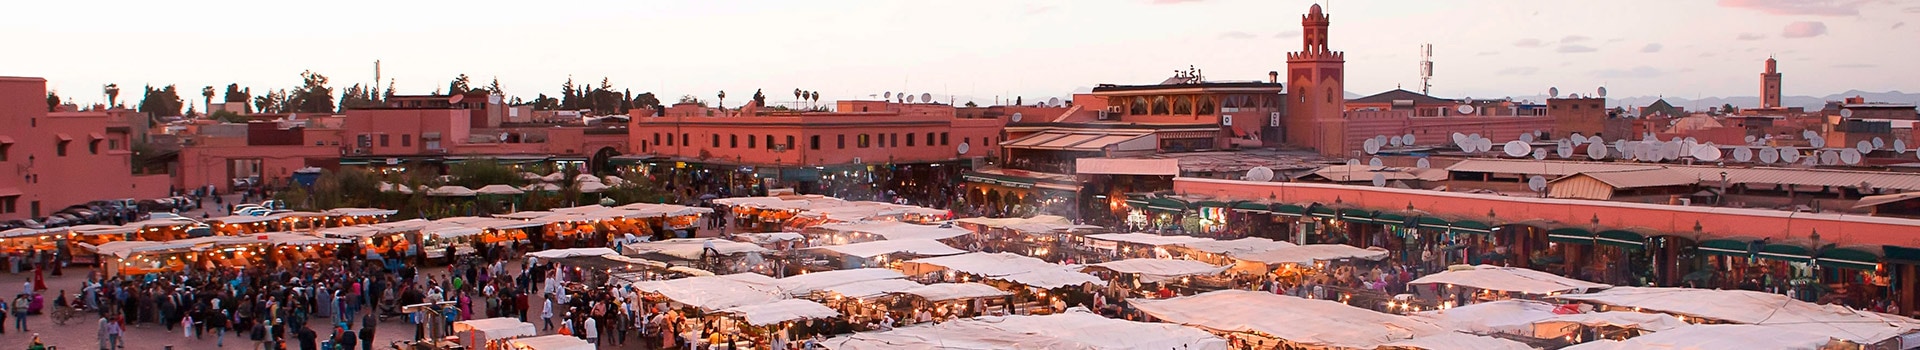 Ibiza - Marrakech